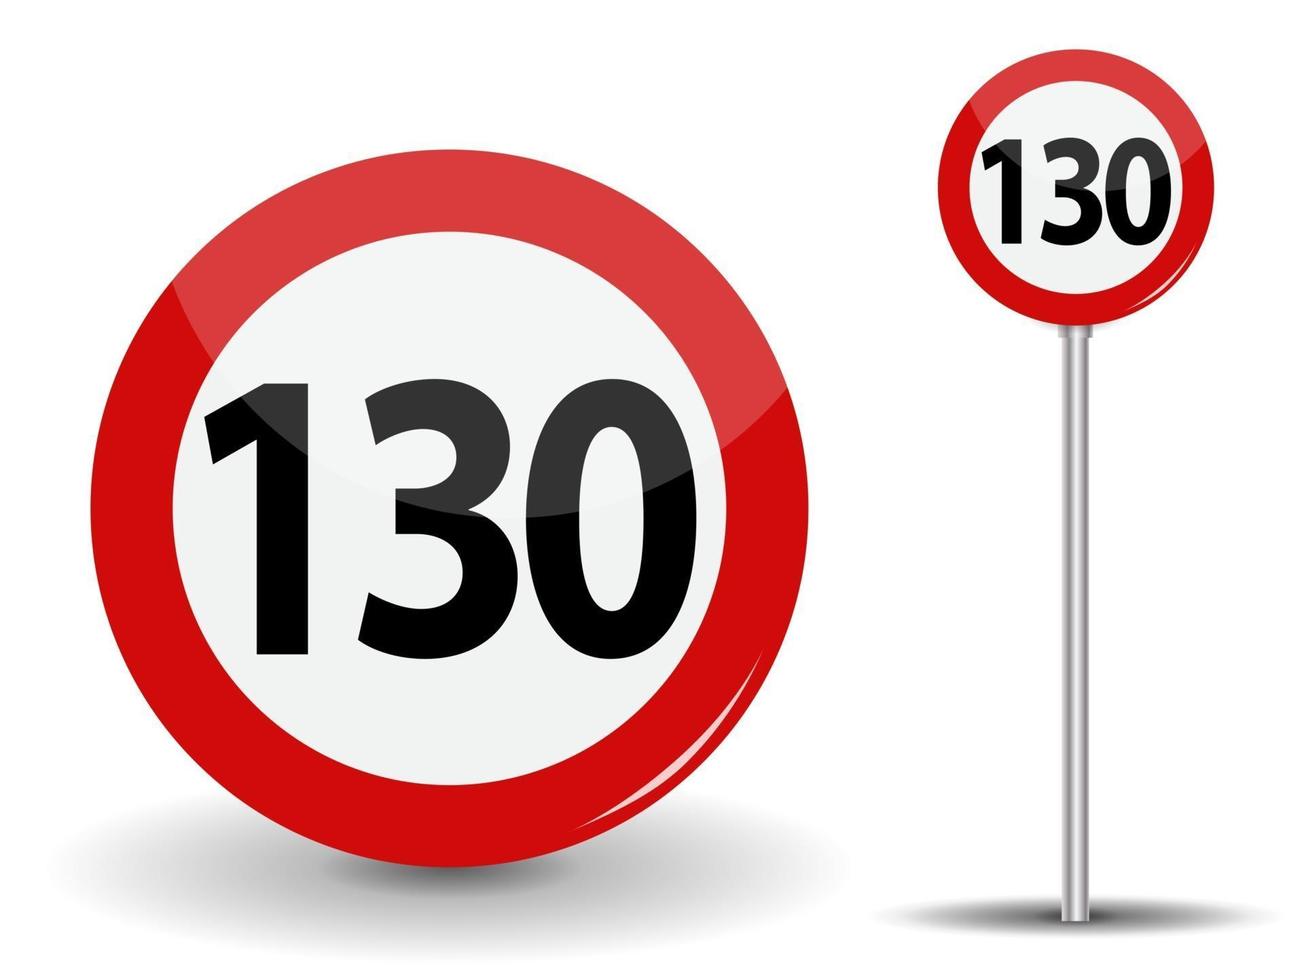 Señal de carretera roja redonda límite de velocidad de 130 kilómetros por hora vector